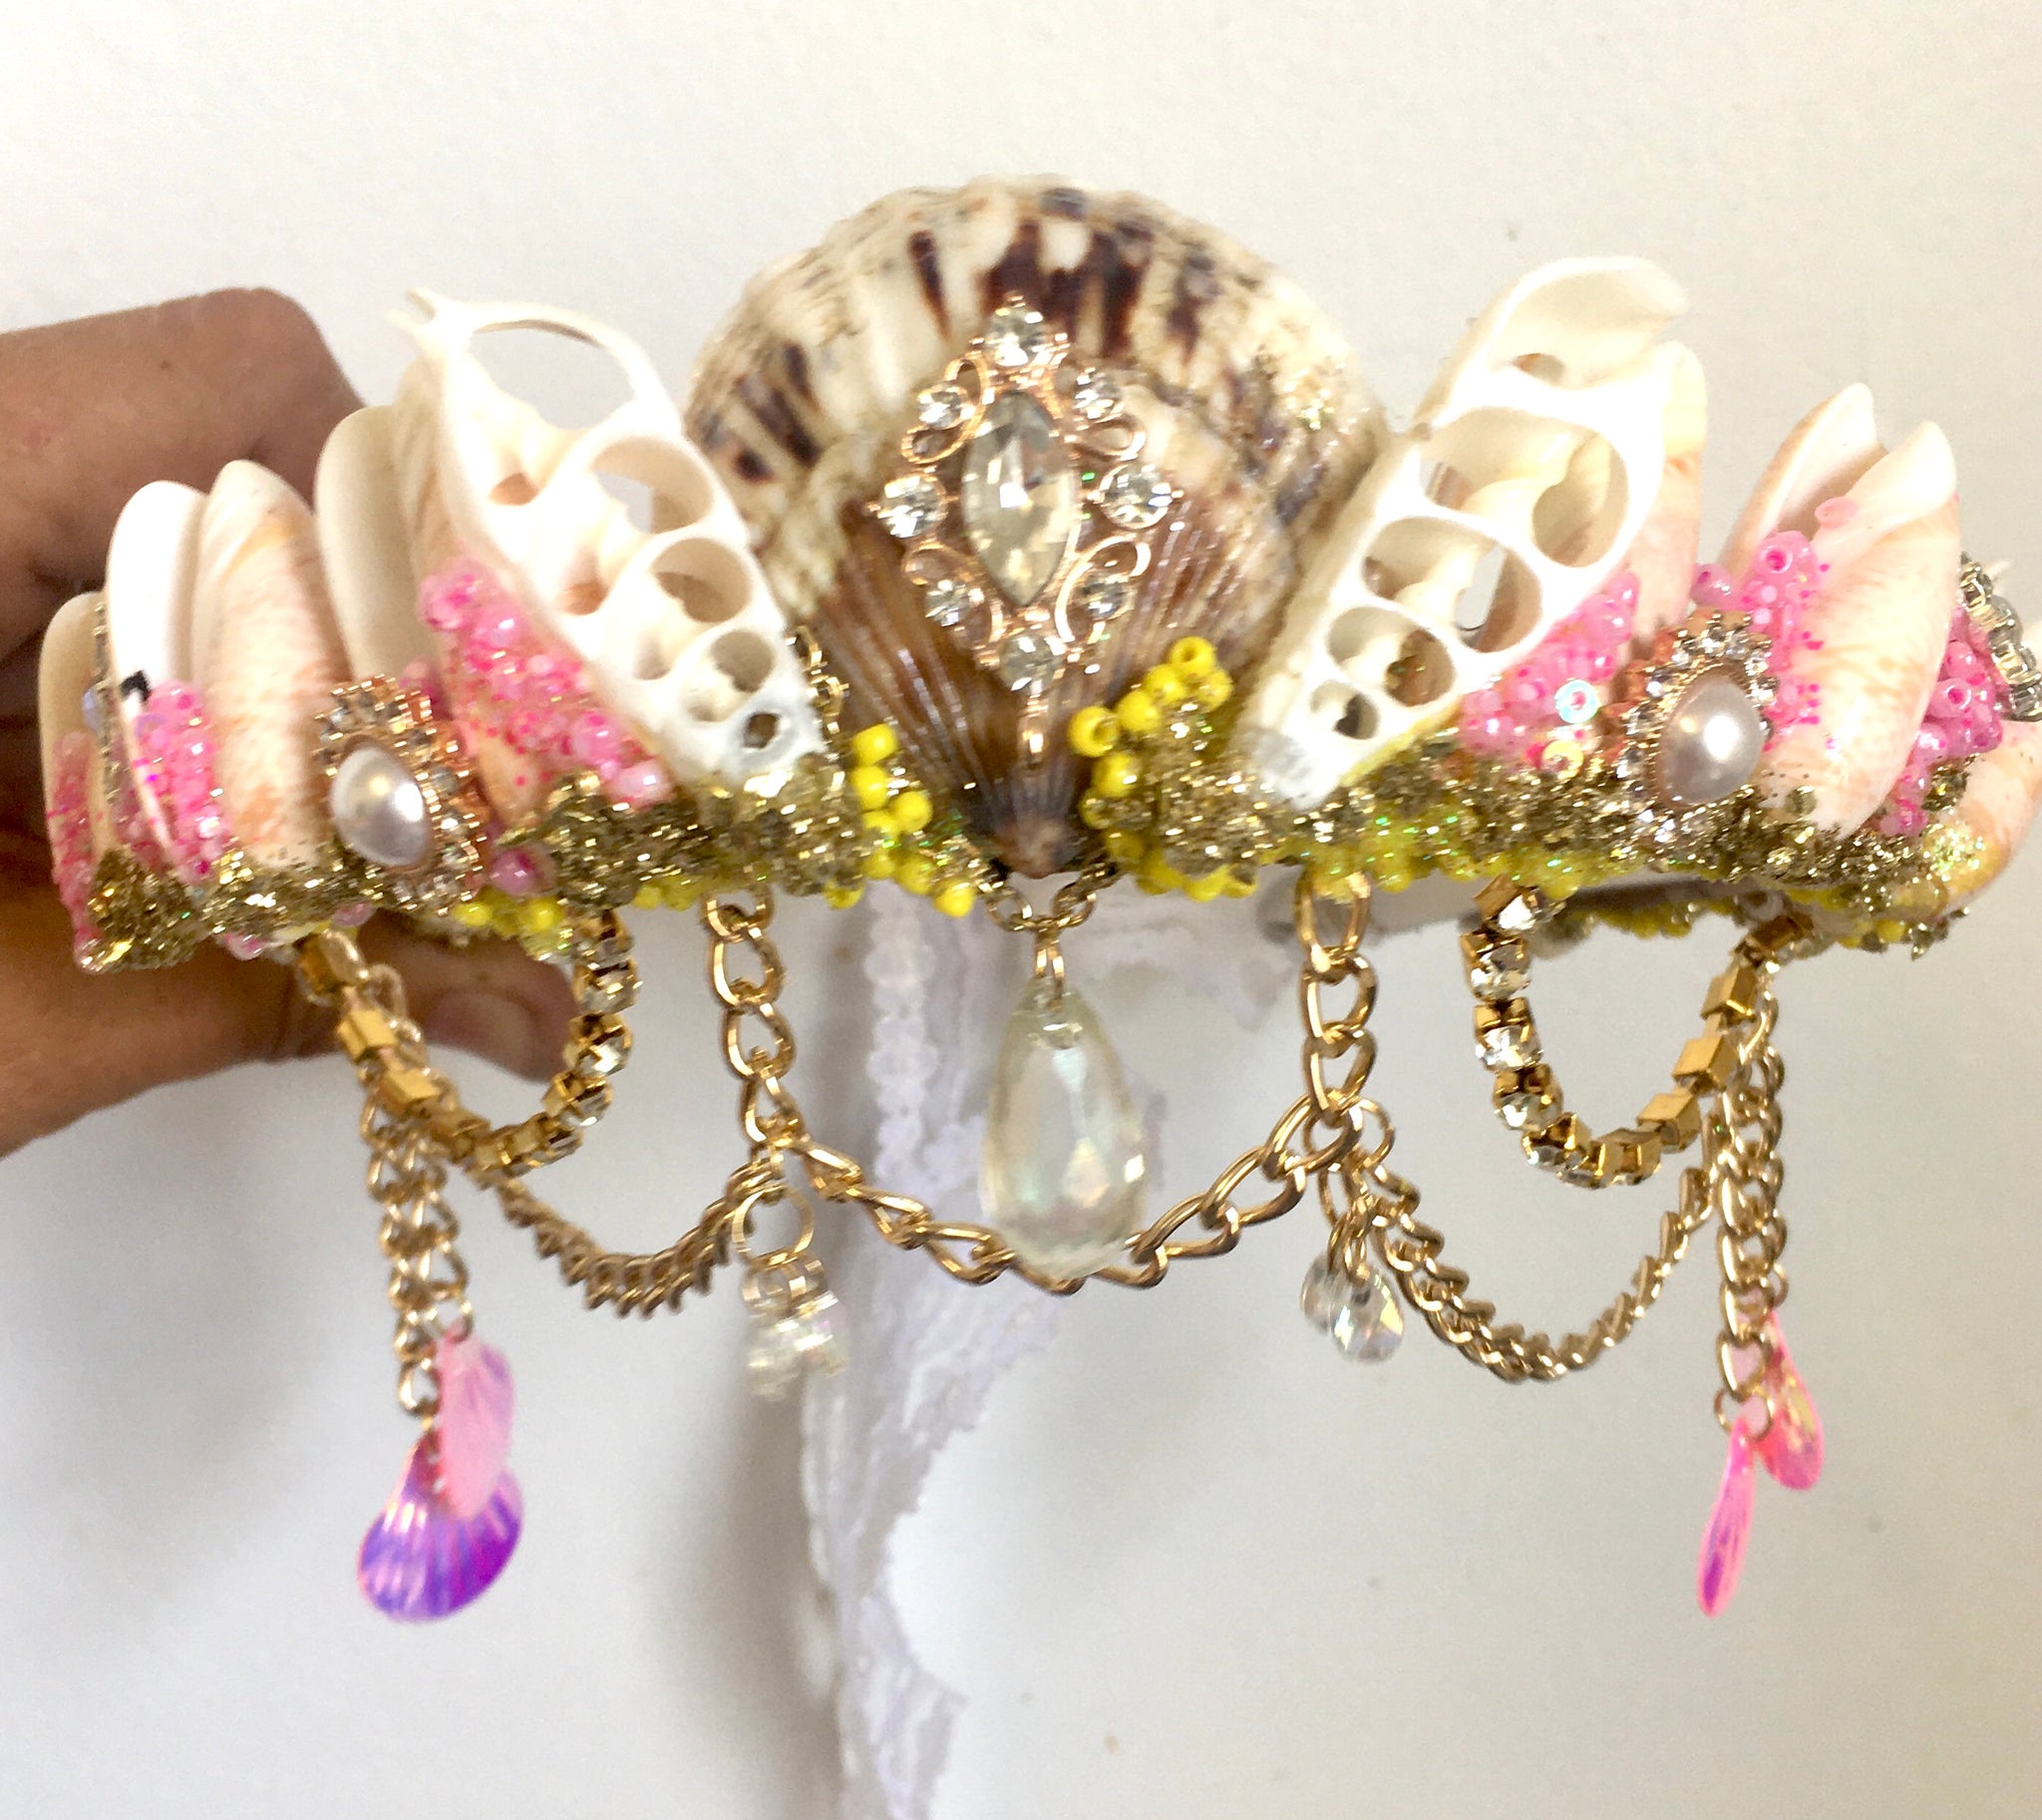 Atala mermaid crown ~ standard piece ~ pre order